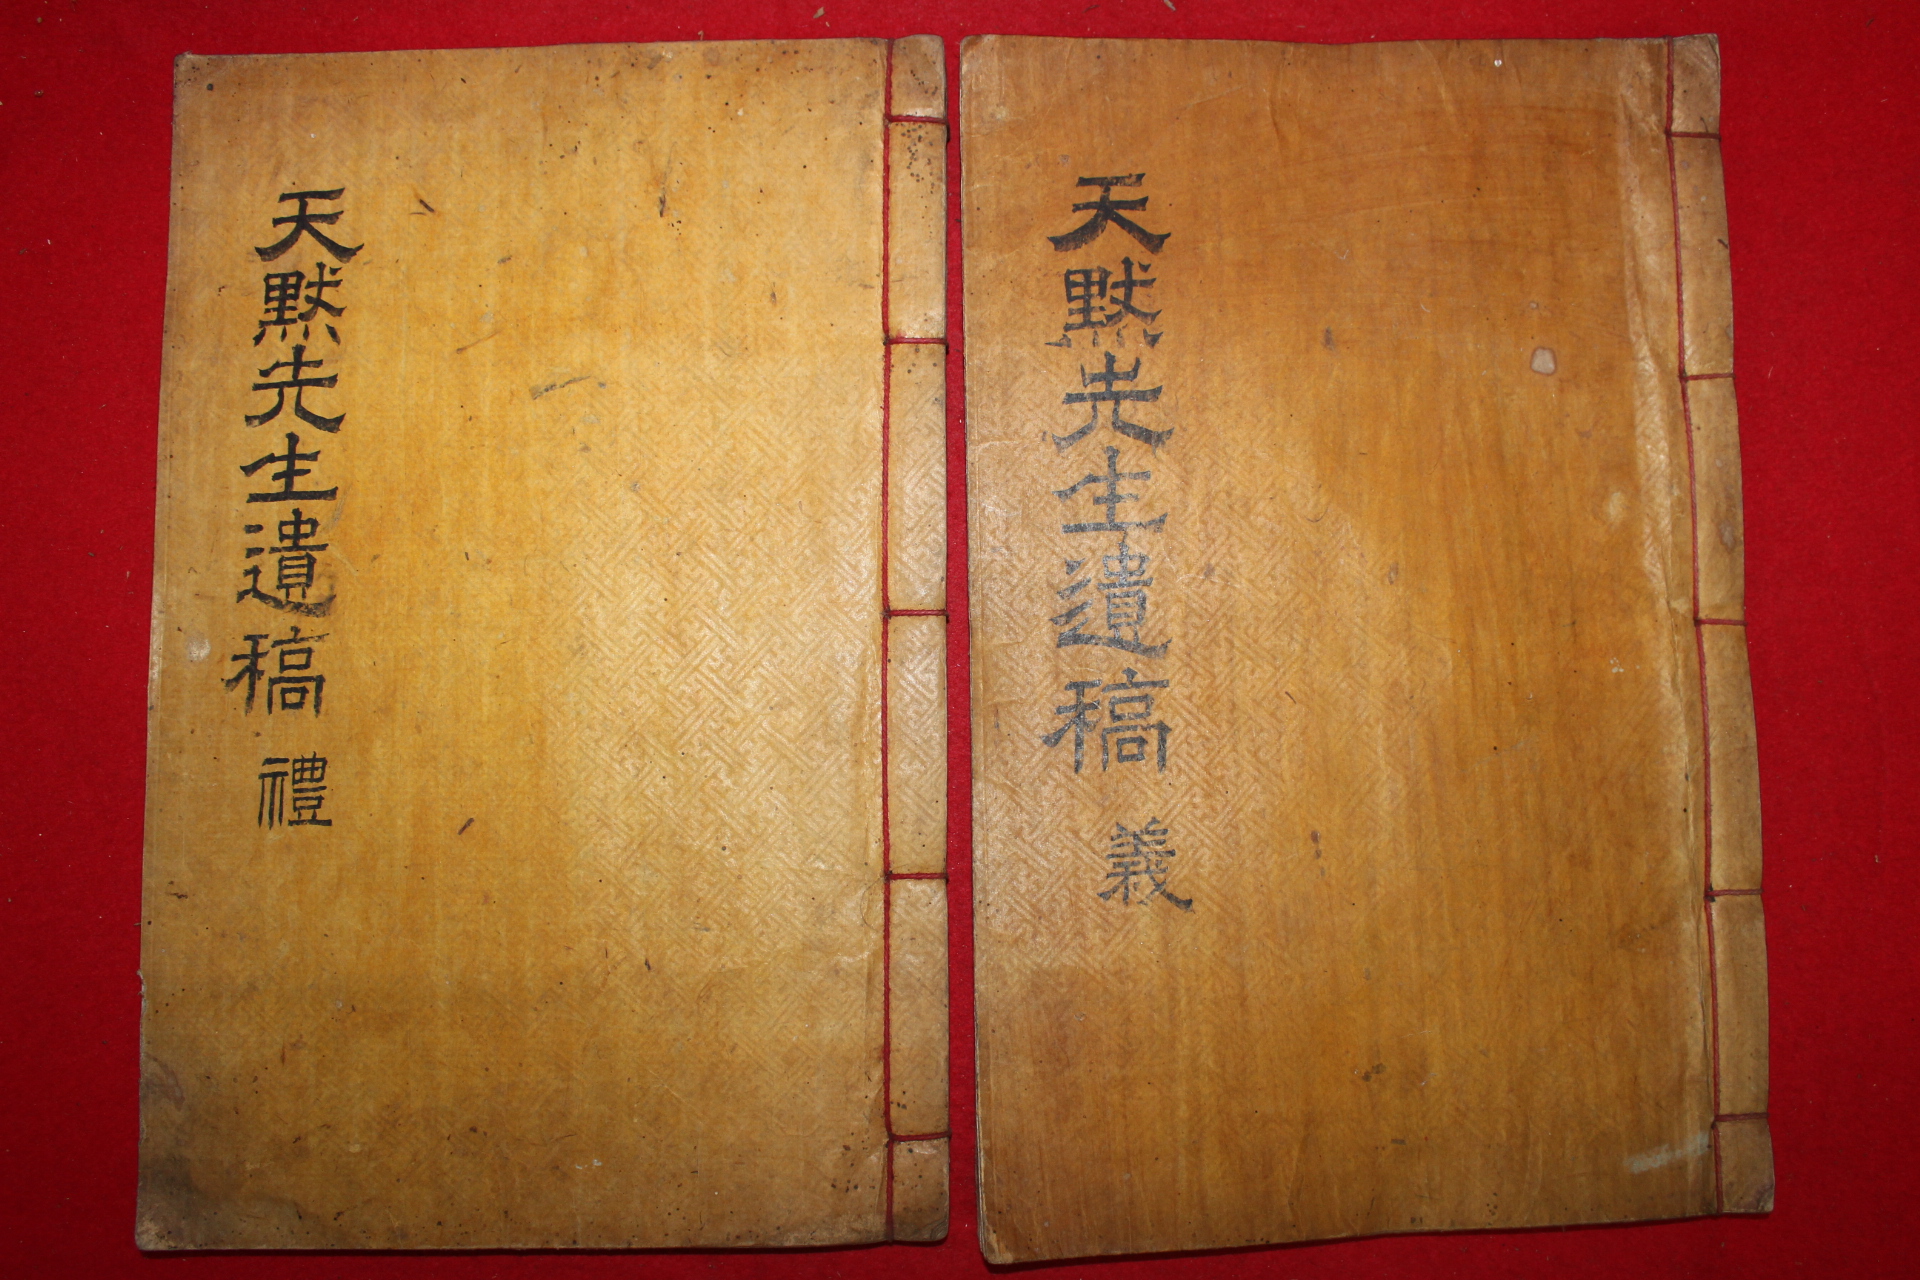 1908년(崇禎五戊申) 목활자본 이상형(李尙馨) 천묵선생집(天默先生集) 2책